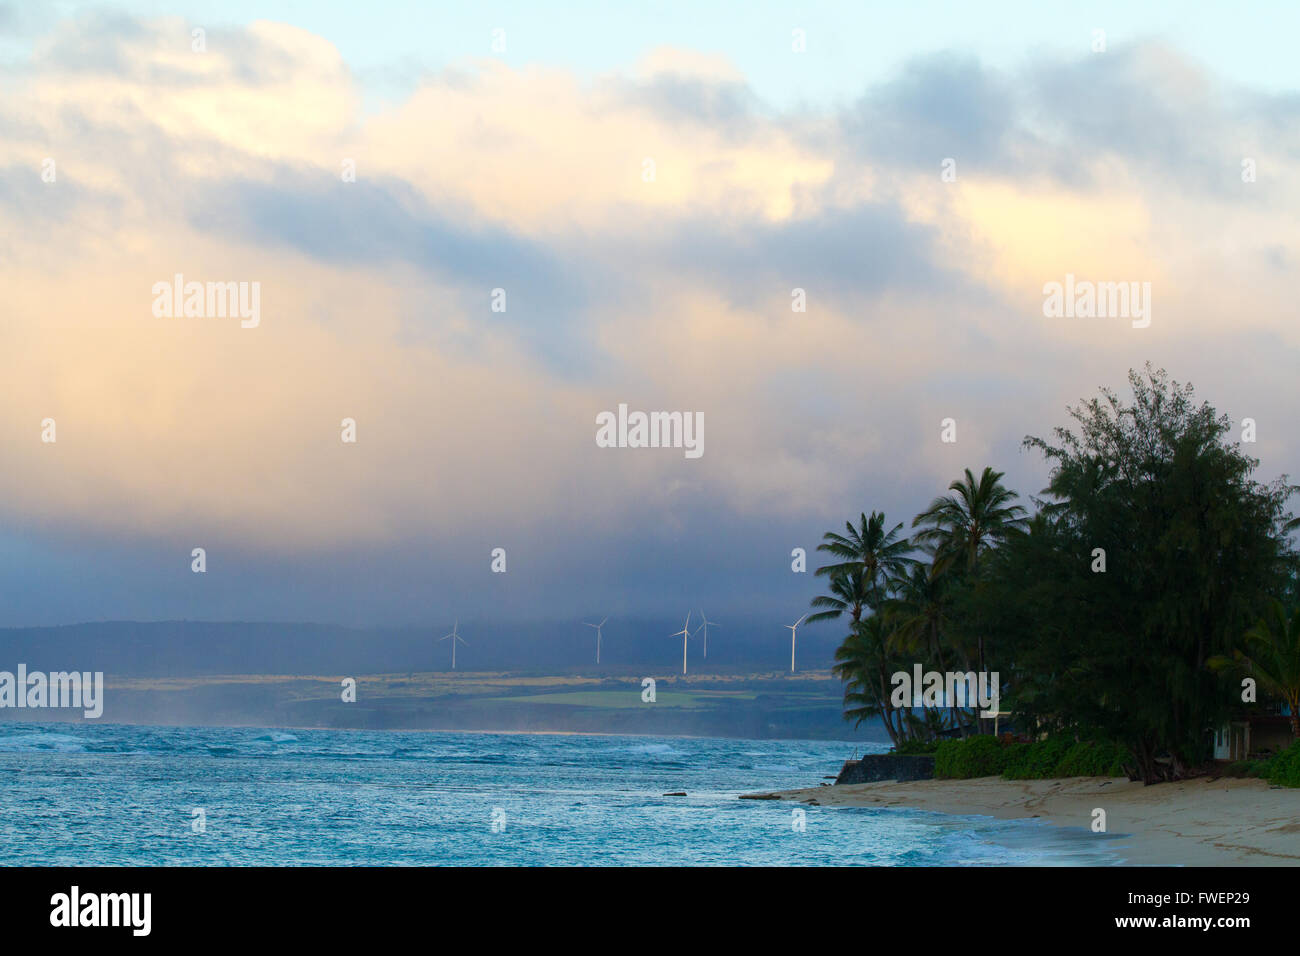 L'isola tropicale di Oahu Hawaii ospita questo enorme parco eolico appena oltre le onde della North Shore. Queste turbine eoliche produ Foto Stock